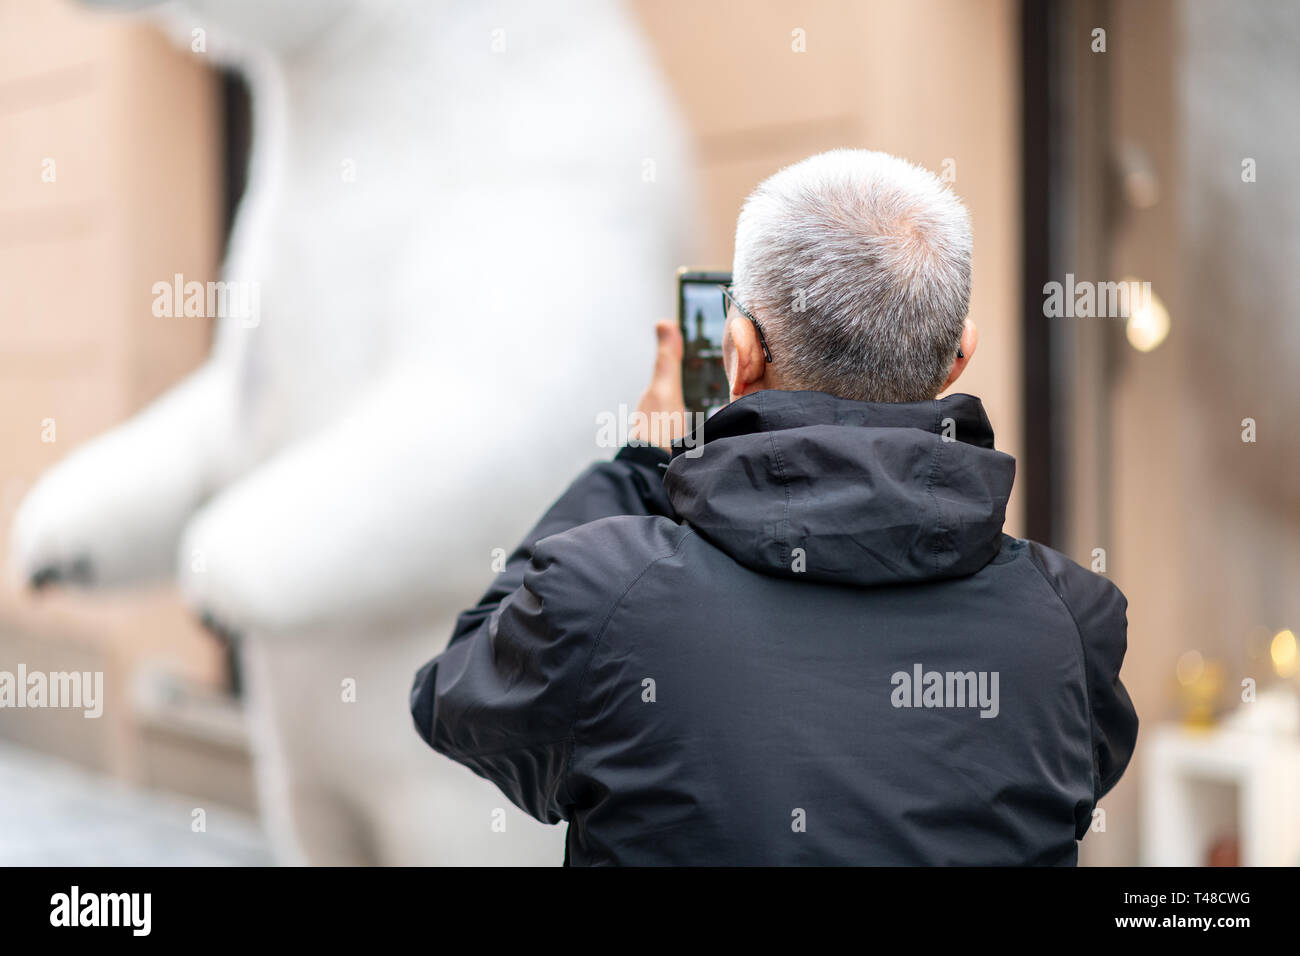 Alte asiatische männliche Tourist nimmt Fotos während Sightseeing in Prag, Tschechische Republik - Osterferien April 2019 Stockfoto